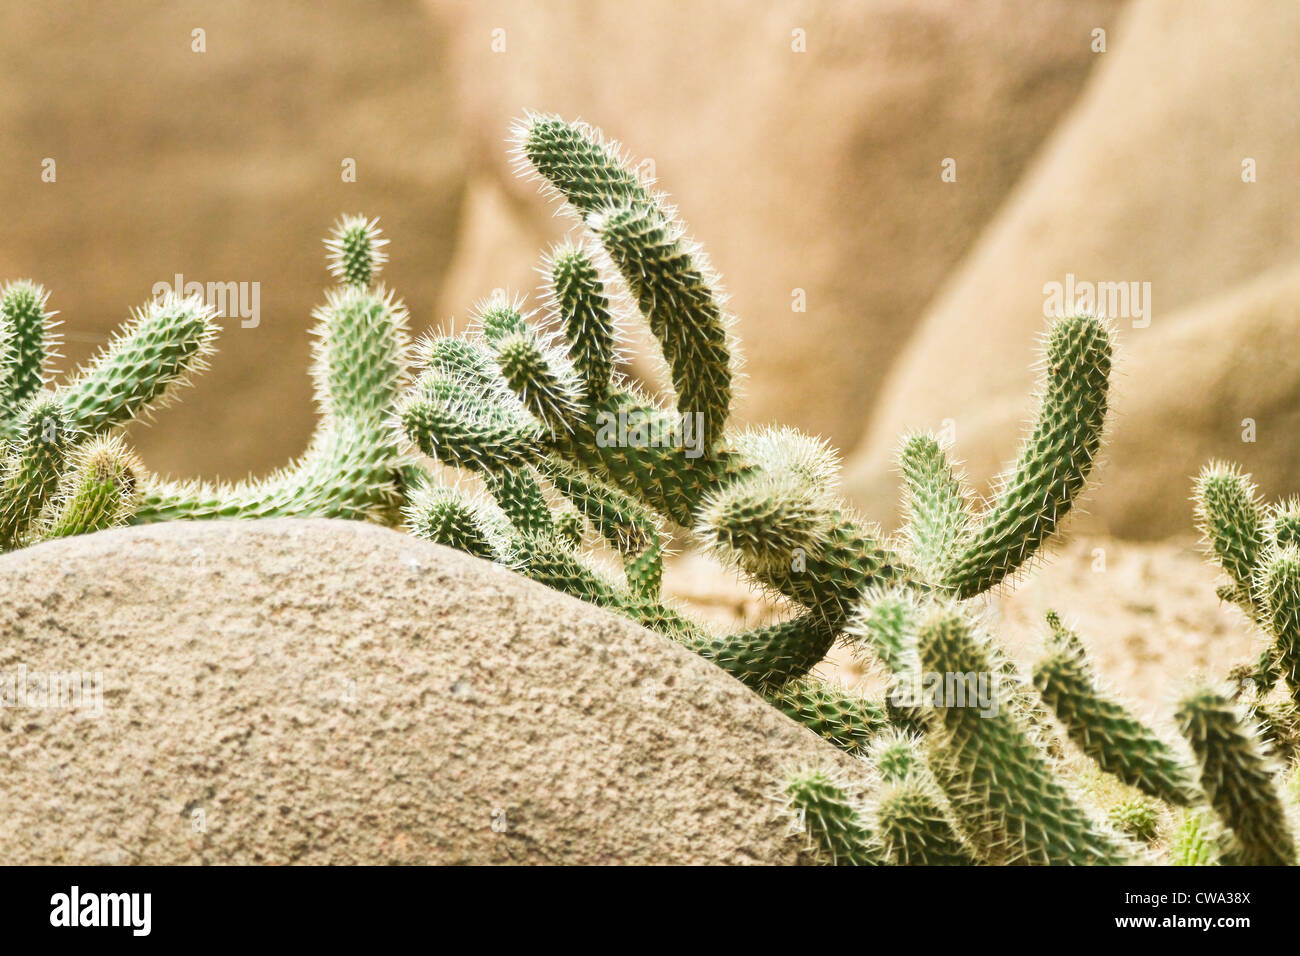 Big cactus poussant dans un environnement sec et rocailleux Banque D'Images